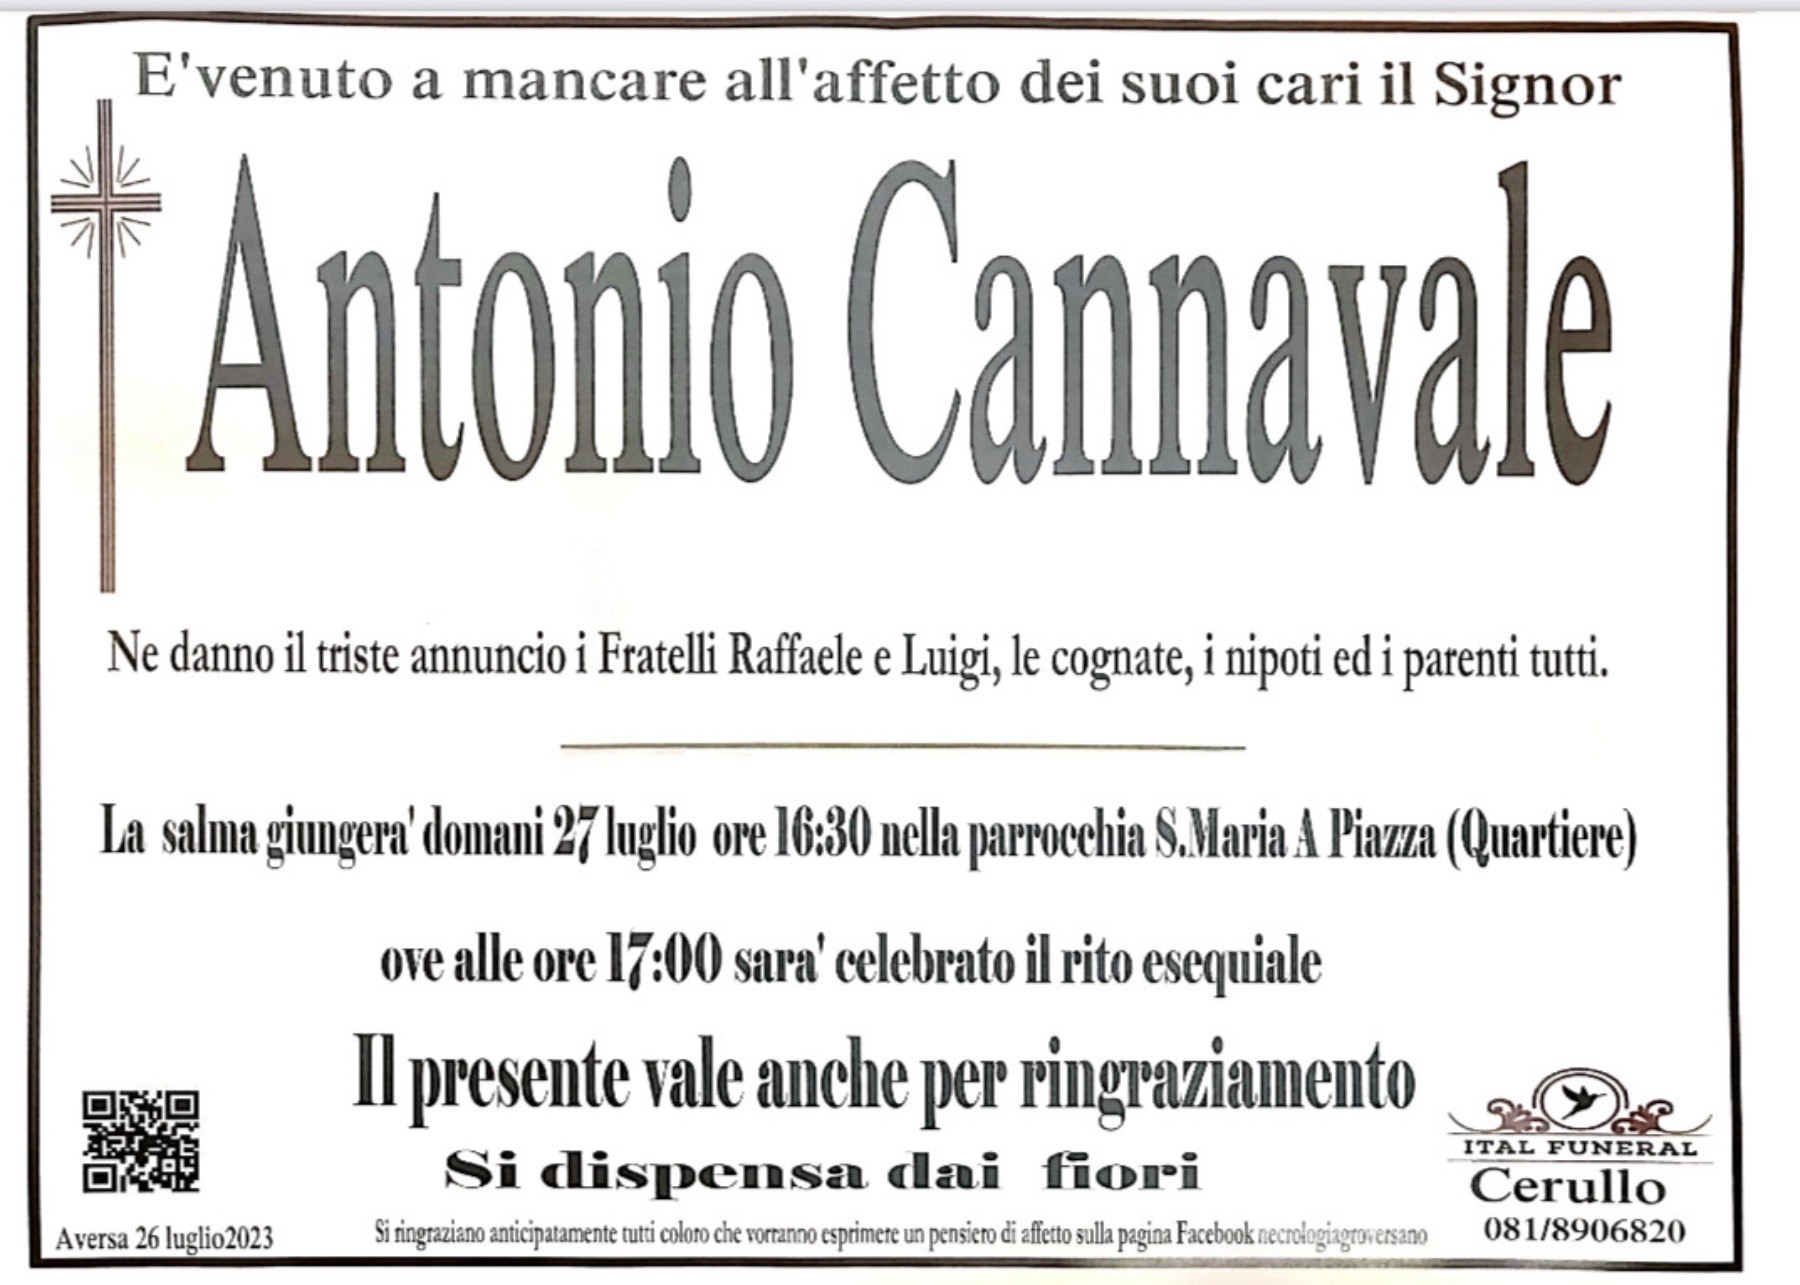 Antonio Cannavale